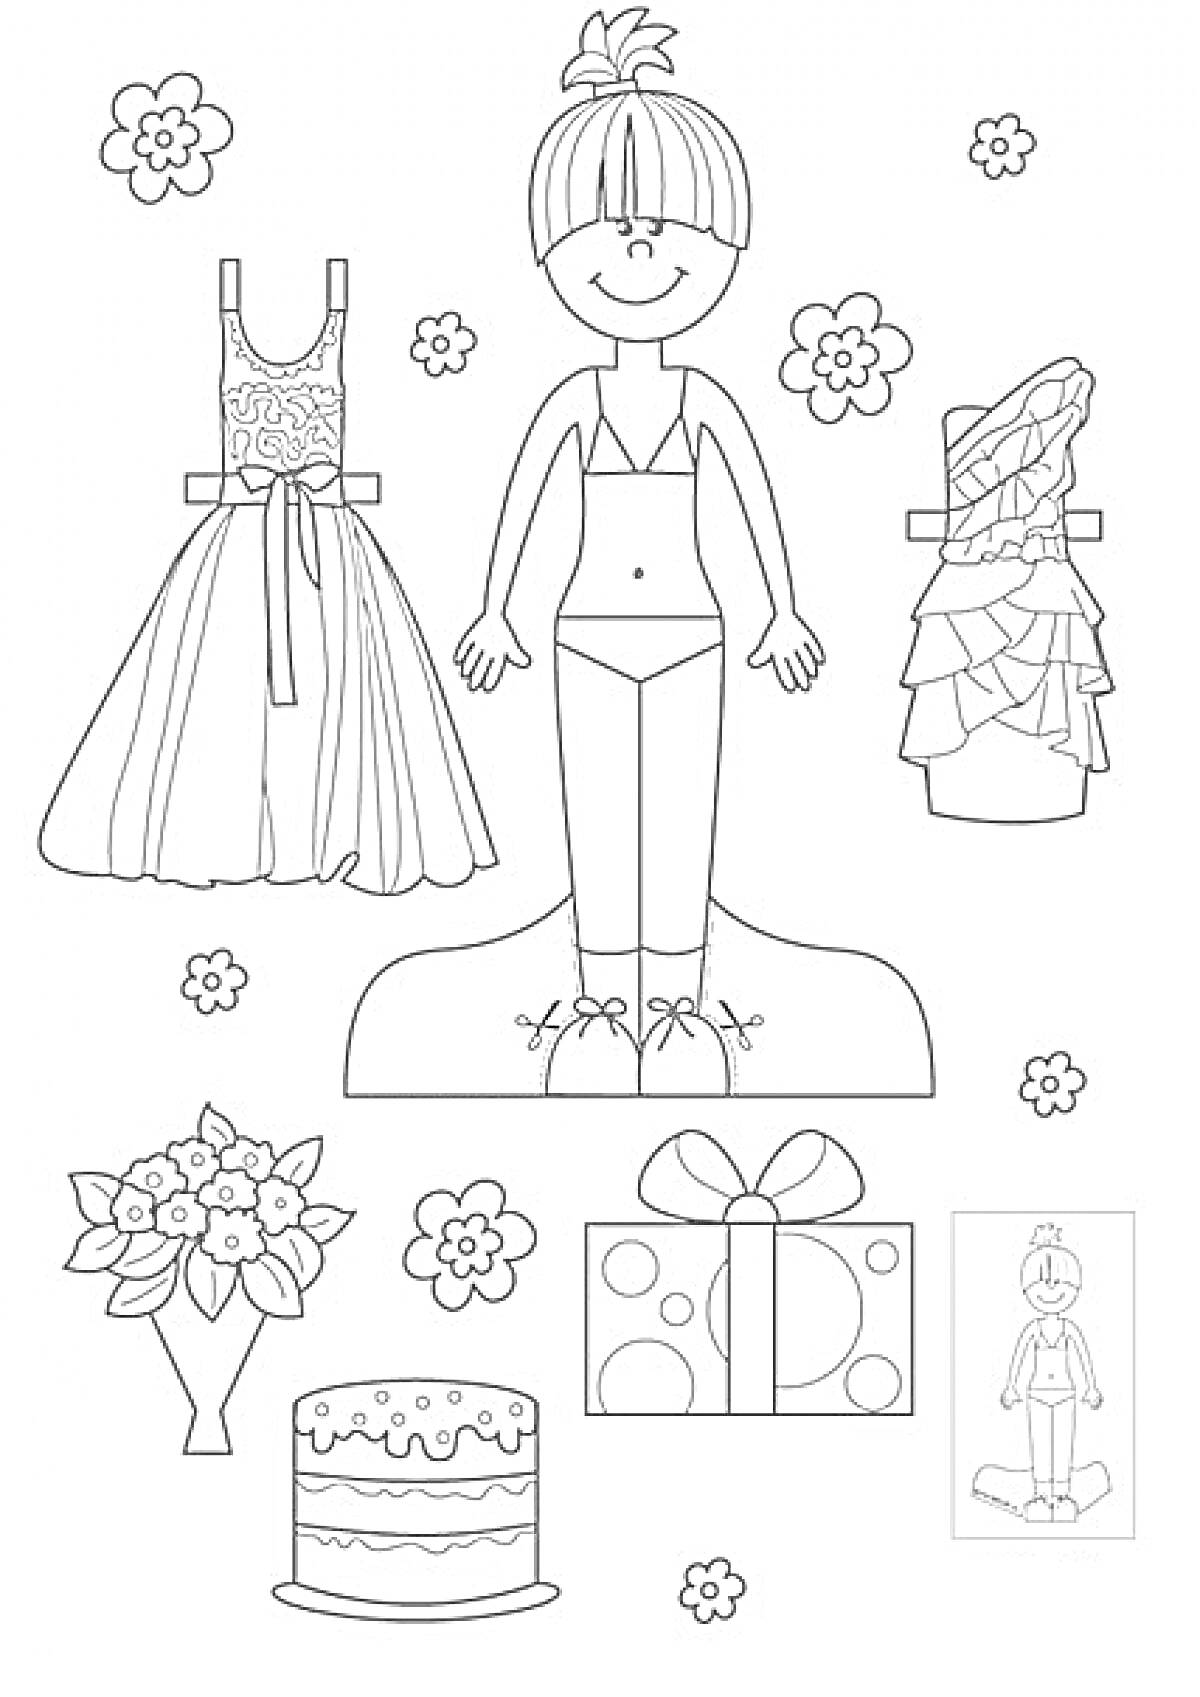 Бумажная кукла с вечерним и повседневным платьями, цветами, подарком и тортом.